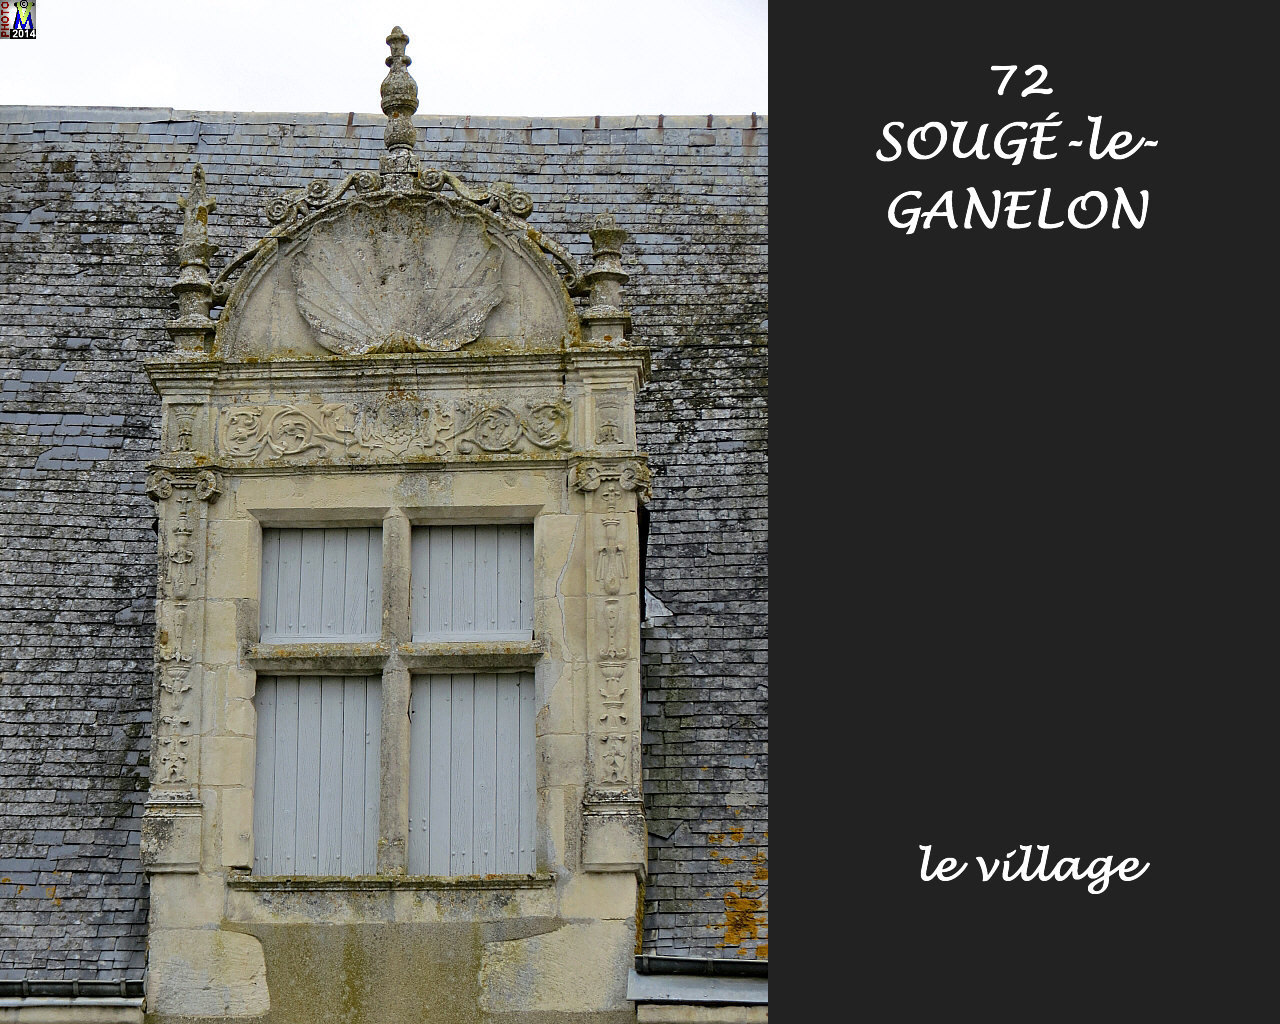 72SOUGE-GANELON_village_108.jpg